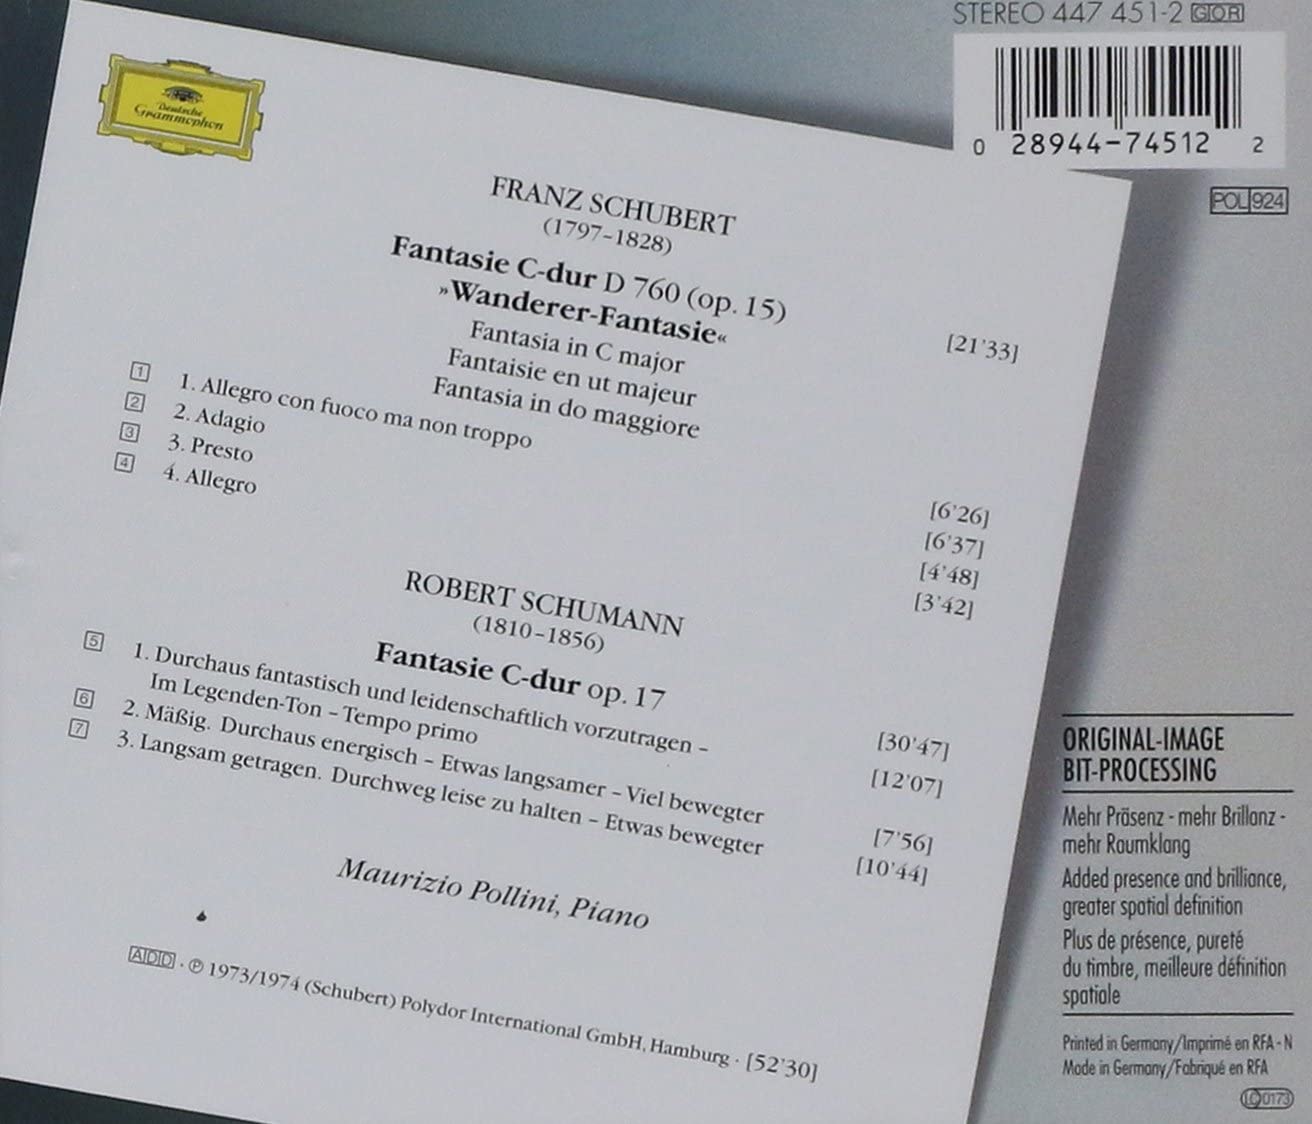 Frank Schubert: Wanderer-Fantasie / Robert Schumann: Fantasie op. 17 | Maurizio Pollini